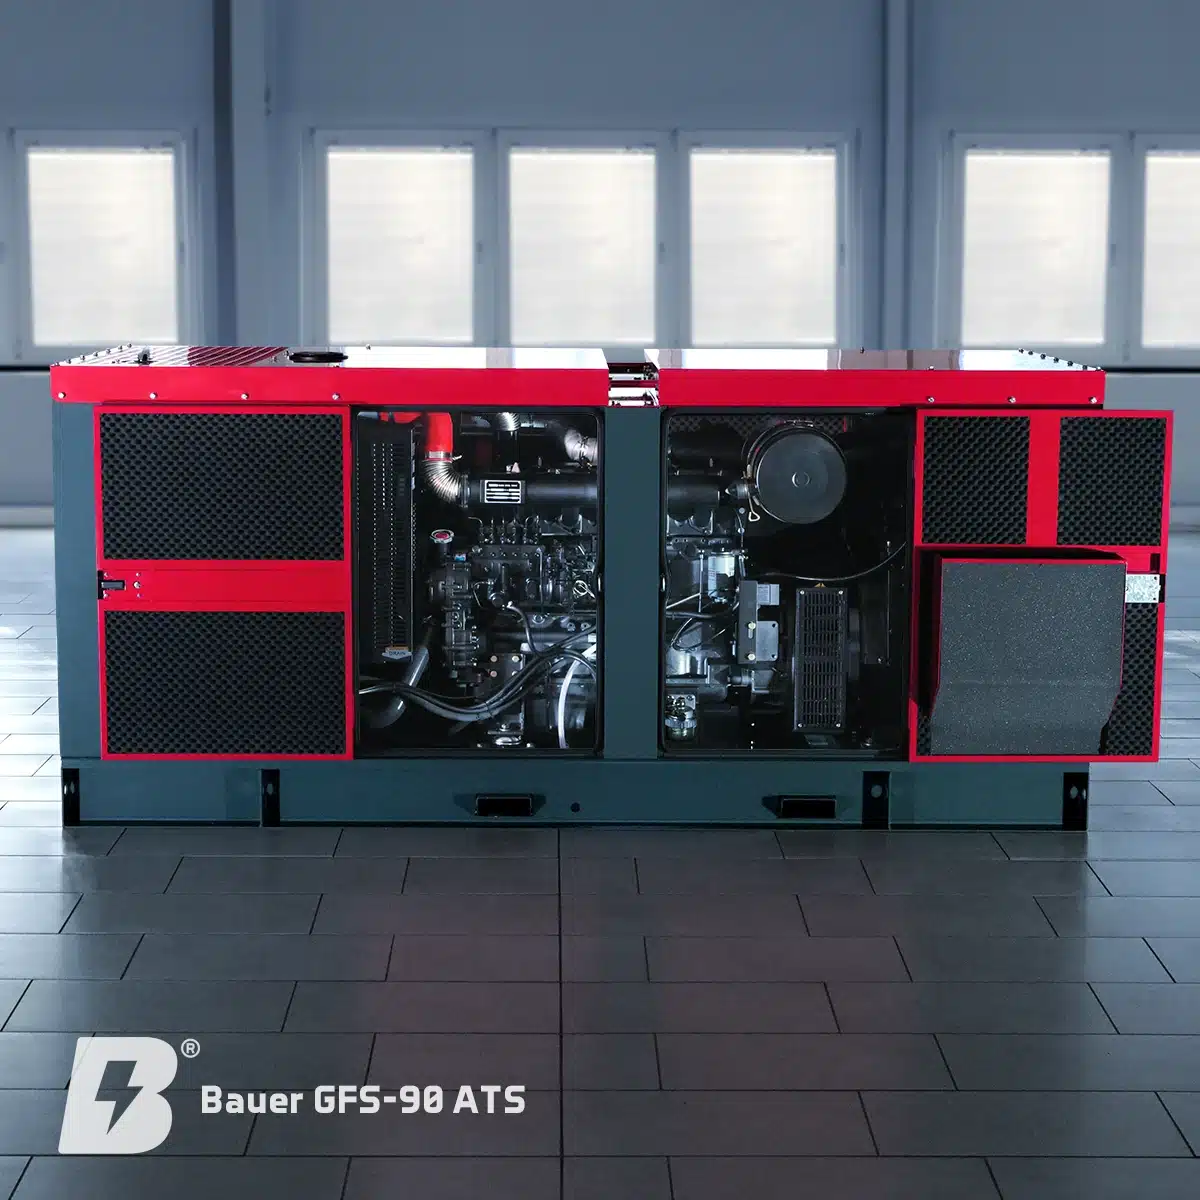 Bauer Generatoren, Bauer GFS-90 ATS, notstromaggregat diesel, generator, stromerzeuger, notstrom-generatoren, blackout, dunkelflaute, Stromausfall